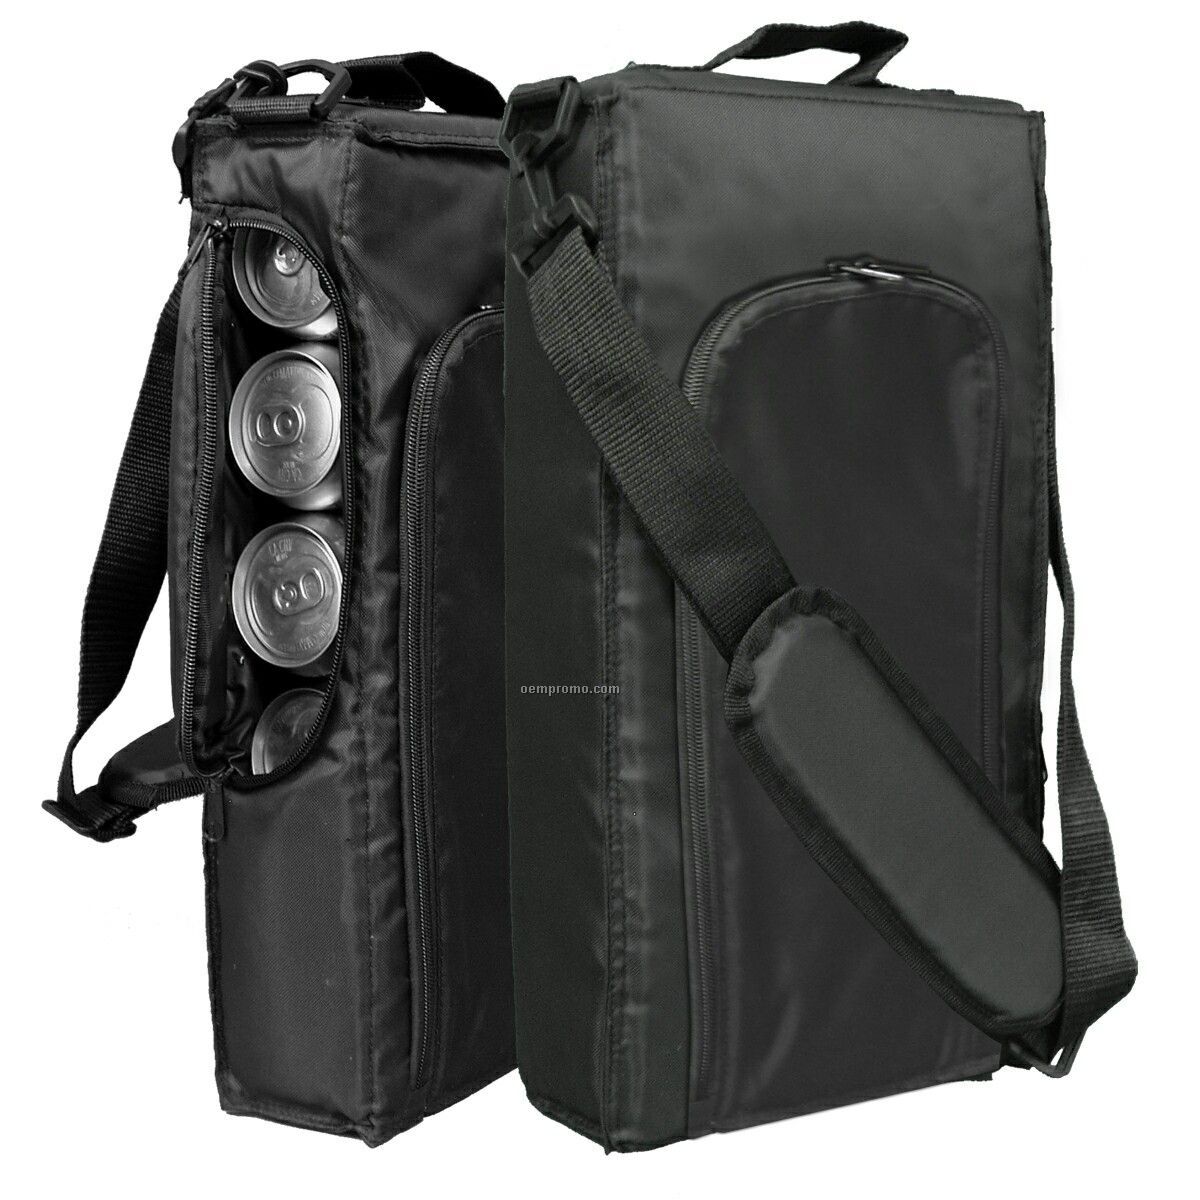 9 Pack Golf Bag Cooler - Blank